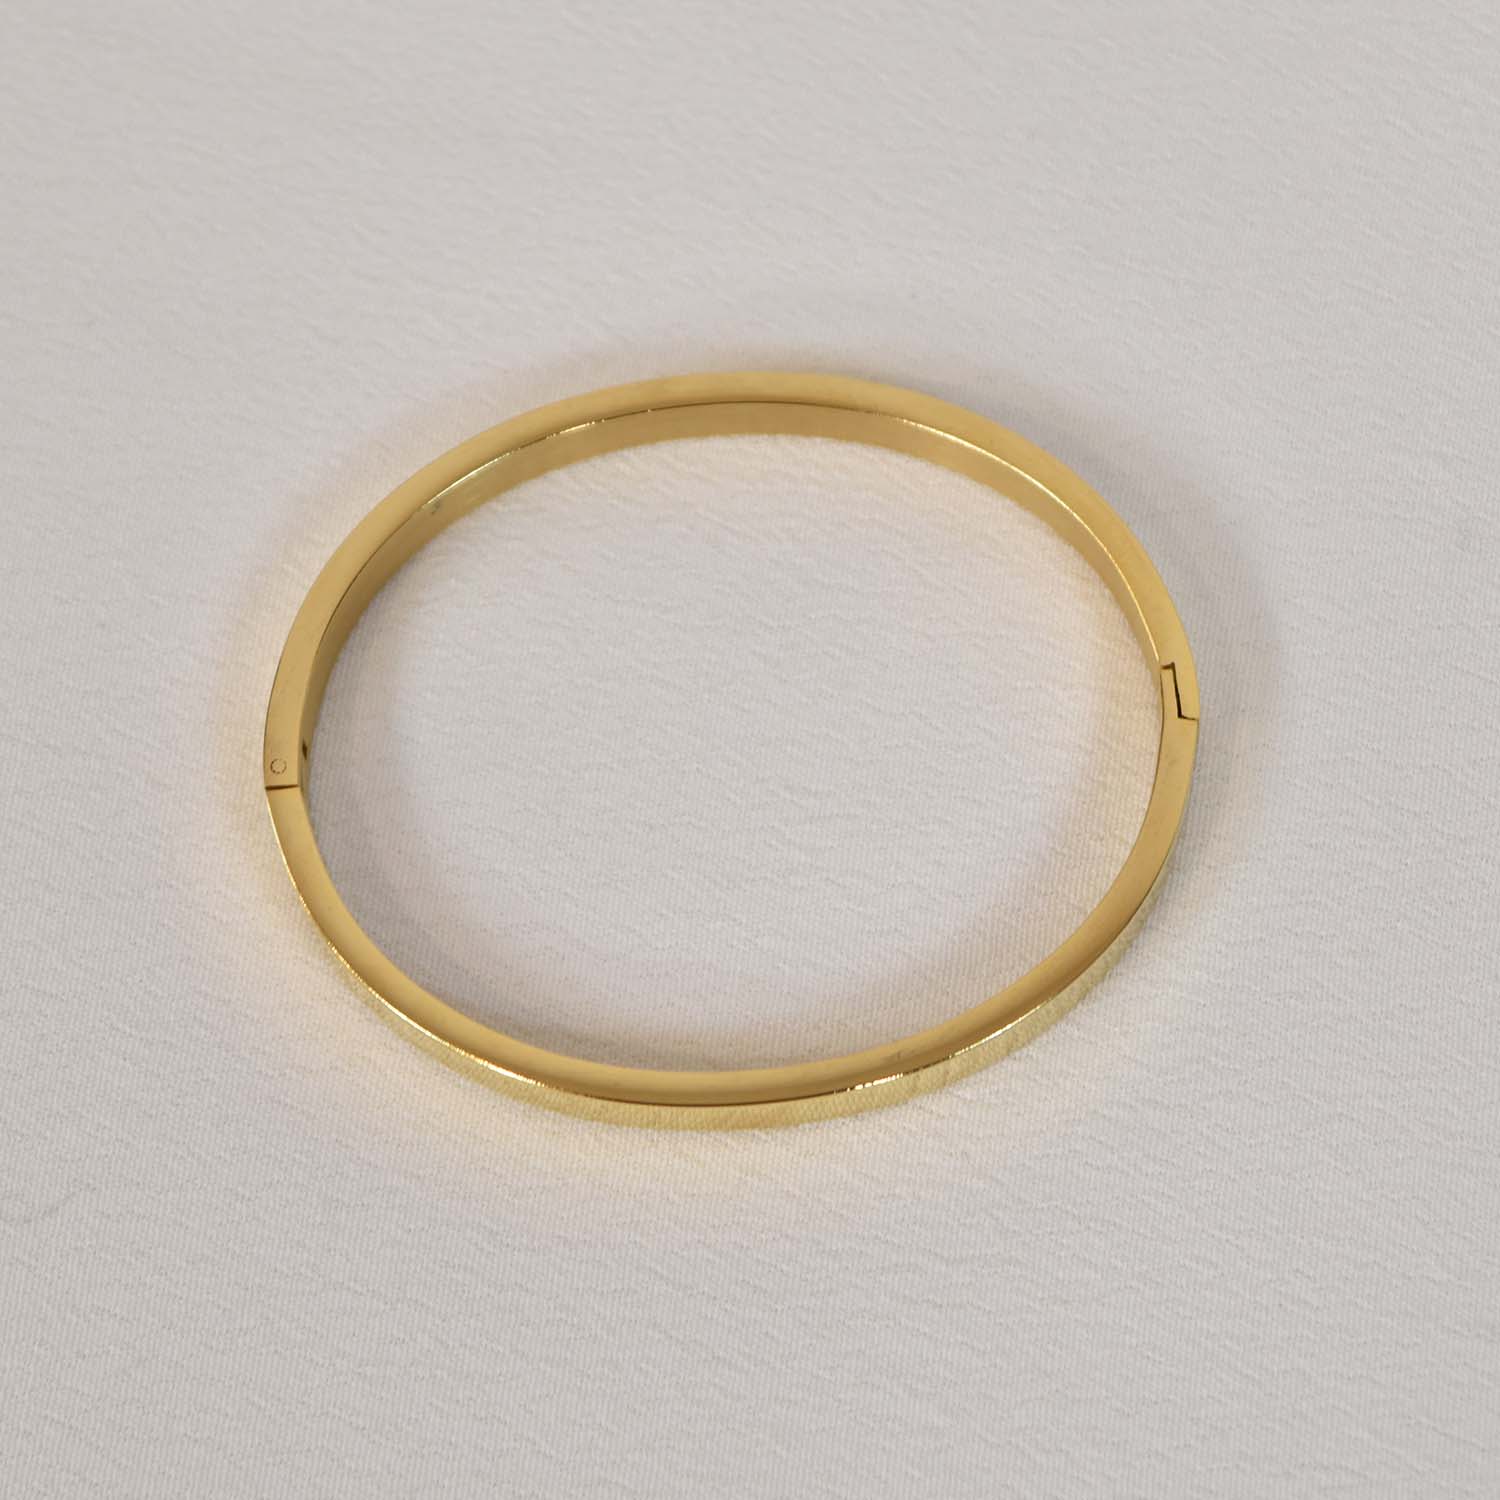 Thin golden bracelet
